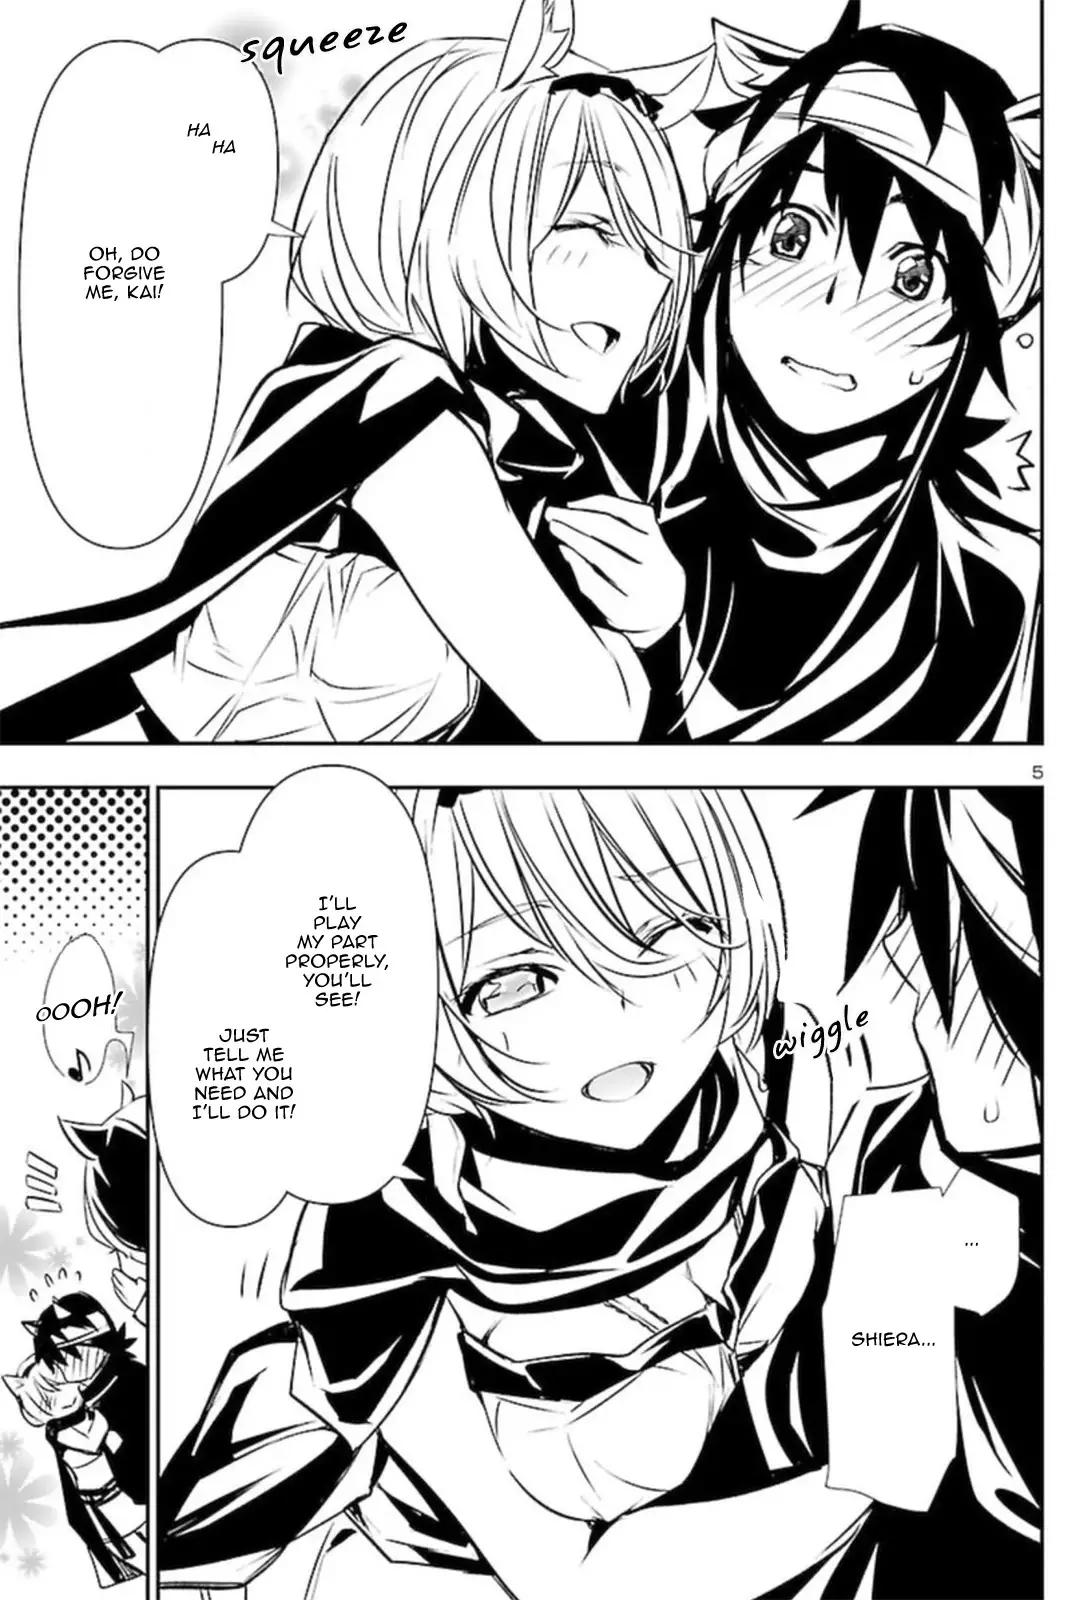 Shinju no Nectar - 52 page 5